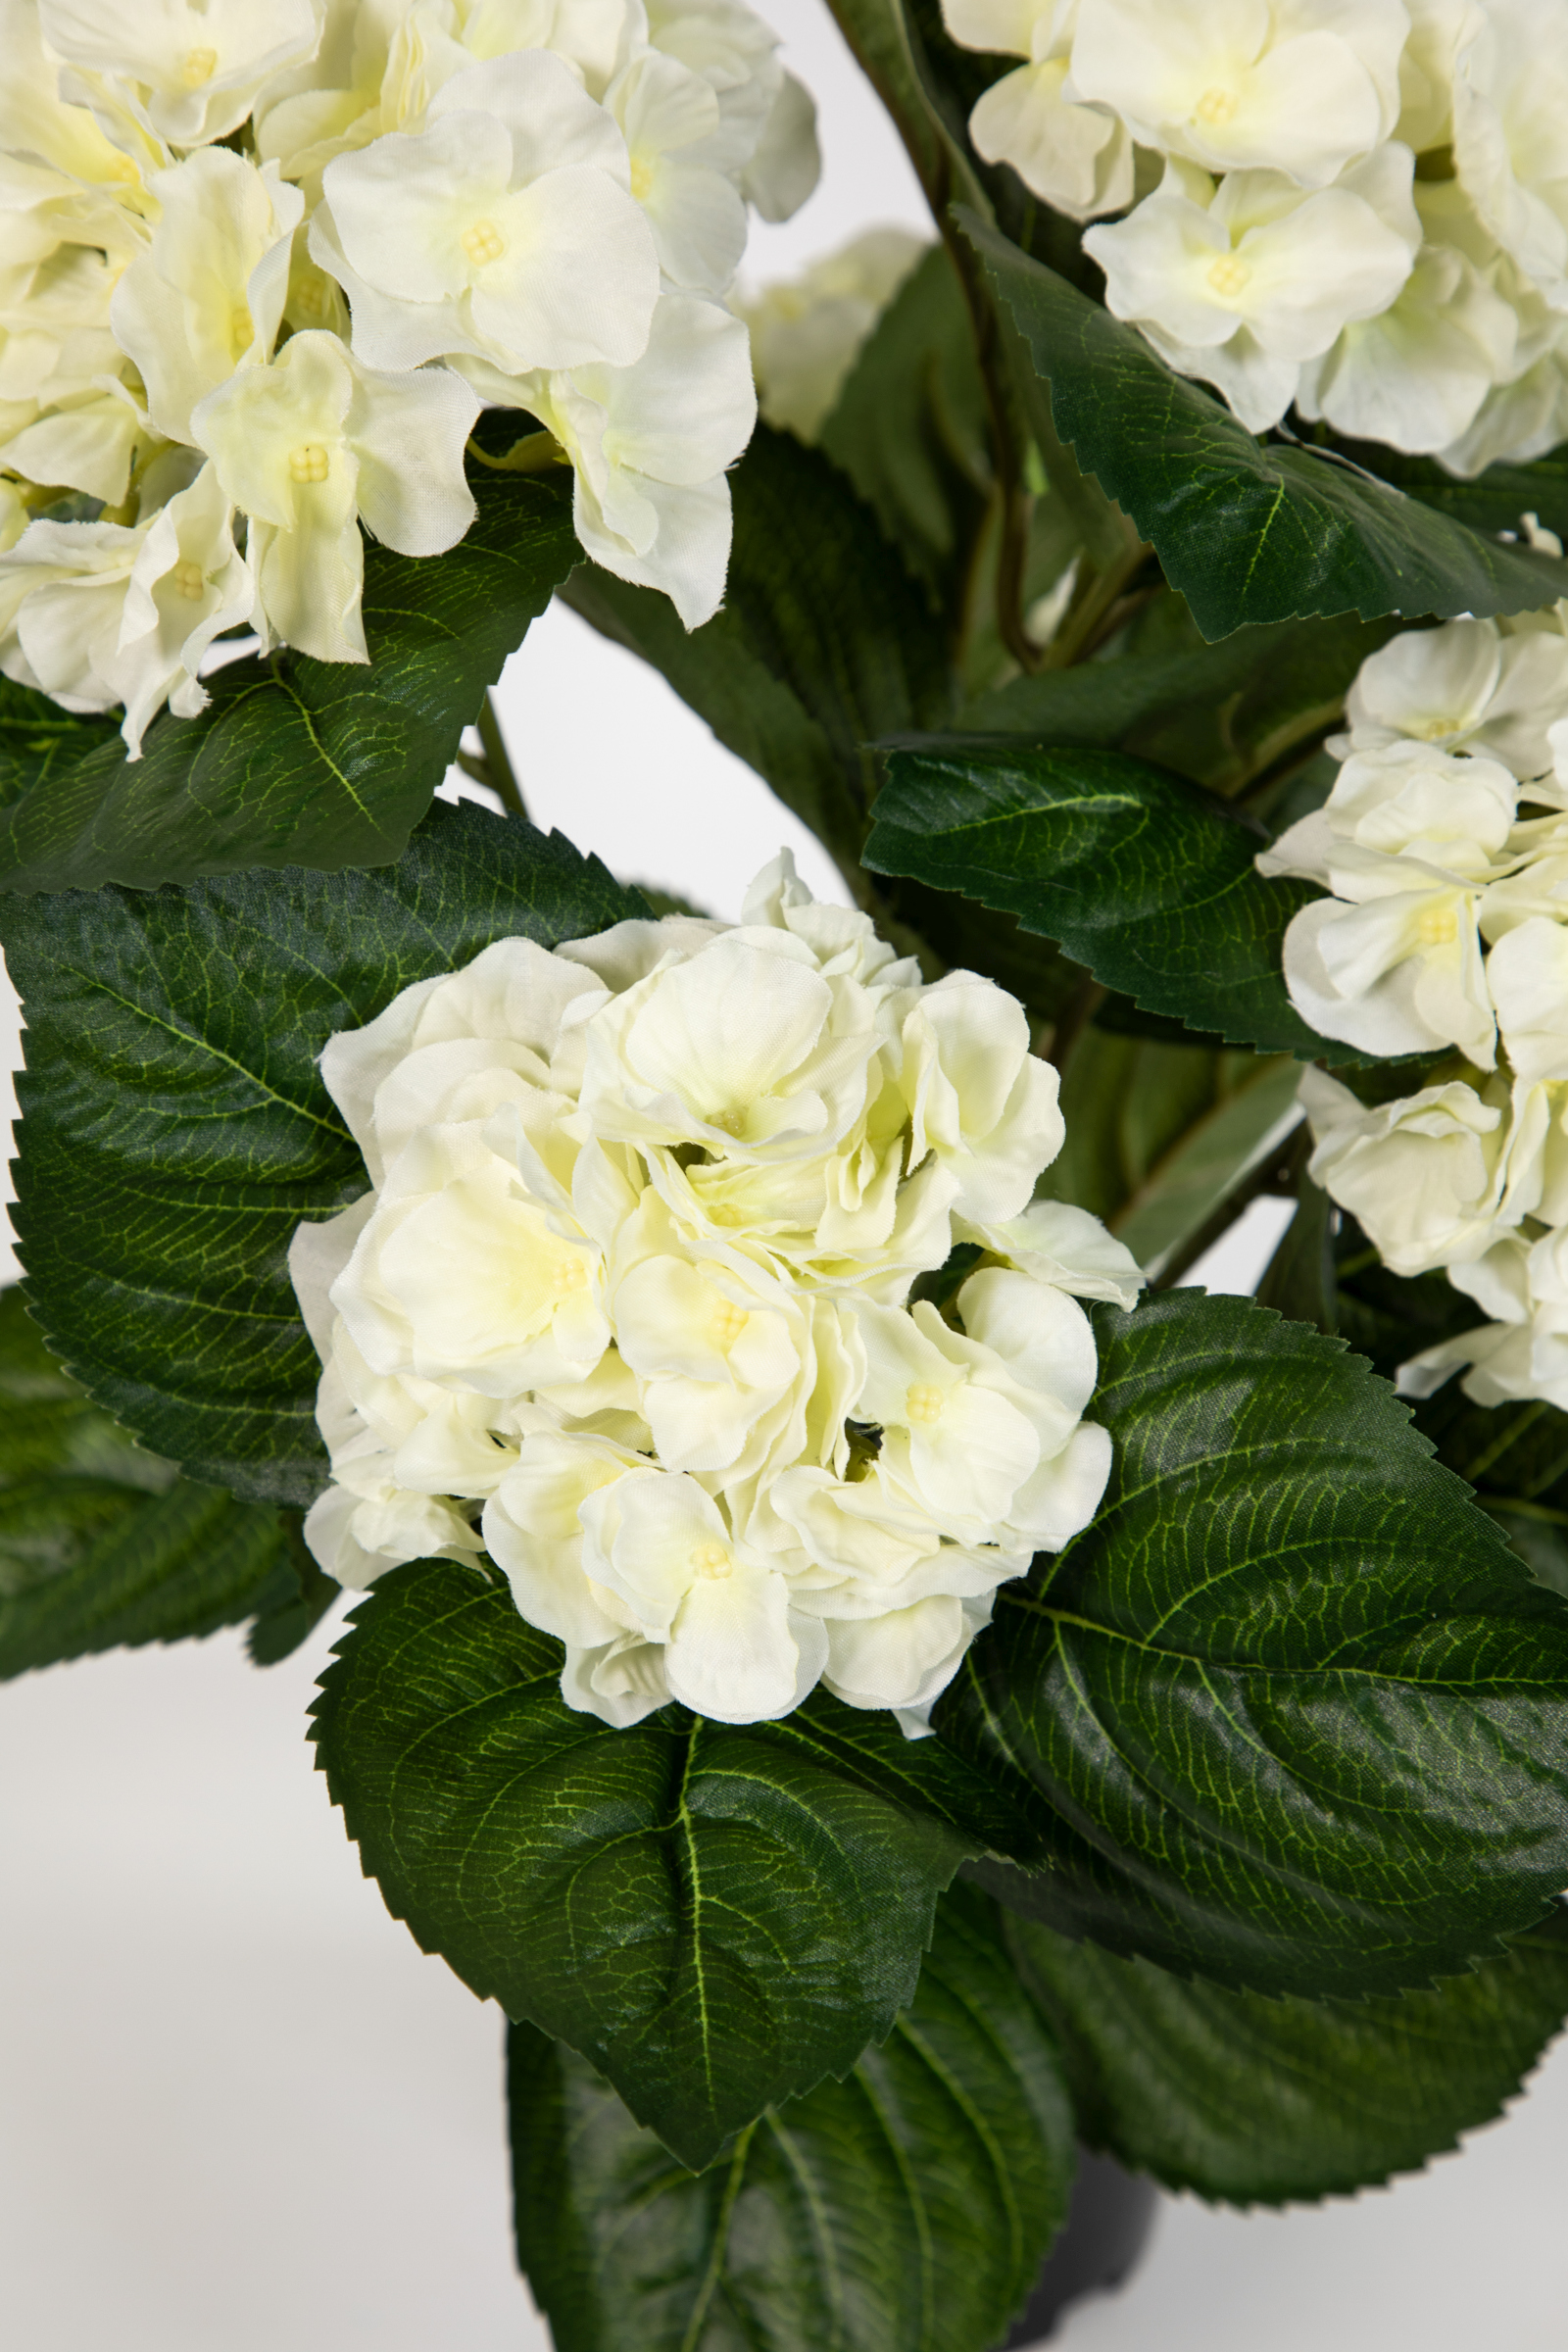 Hortensienbusch Deluxe 42cm weiß-creme im Topf künstliche Pflanzen Blumen Hortensie LM Kunstpflanzen